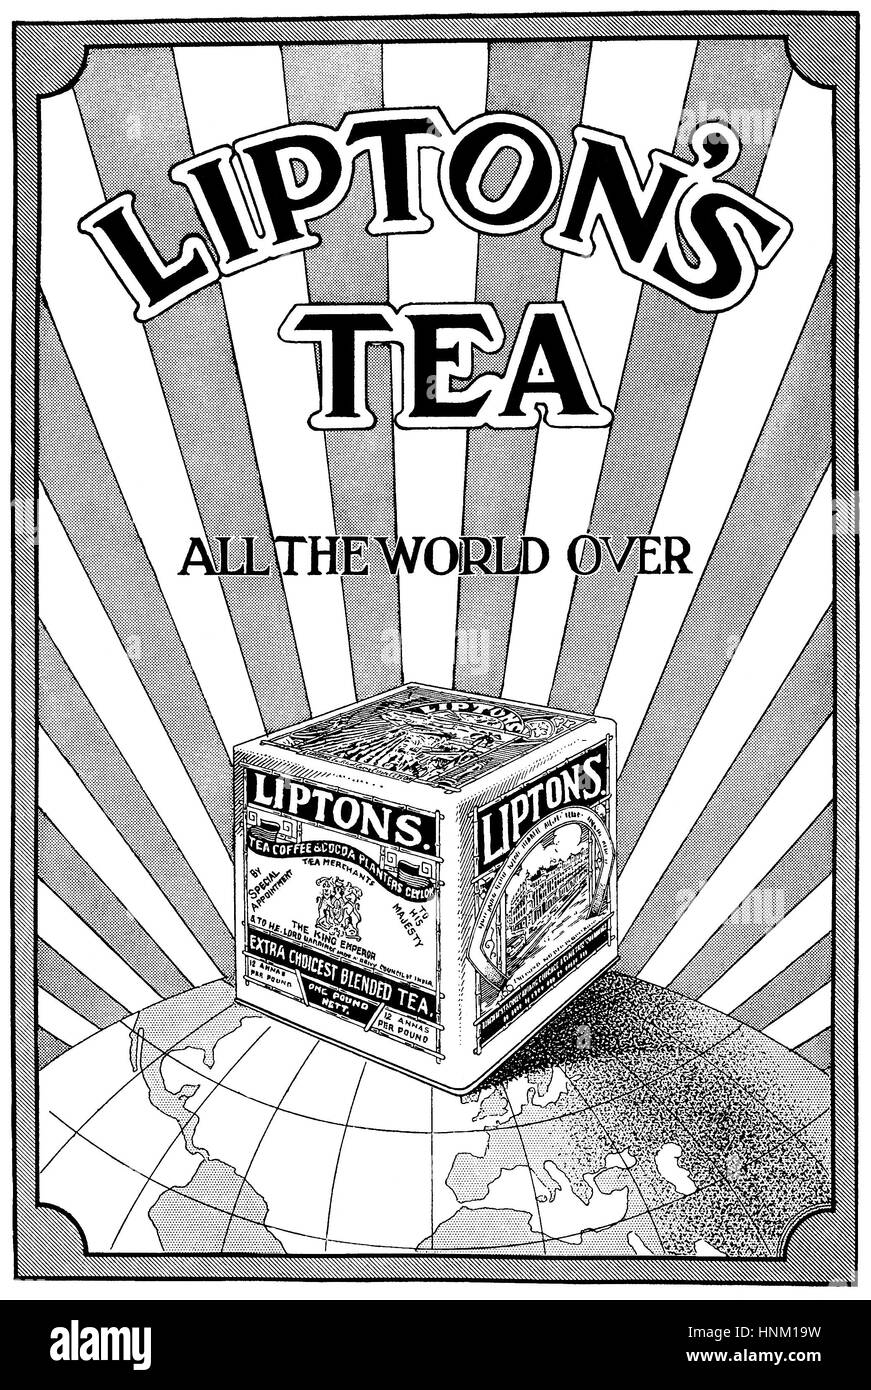 1922 British pubblicità per Lipton's Tea Foto Stock